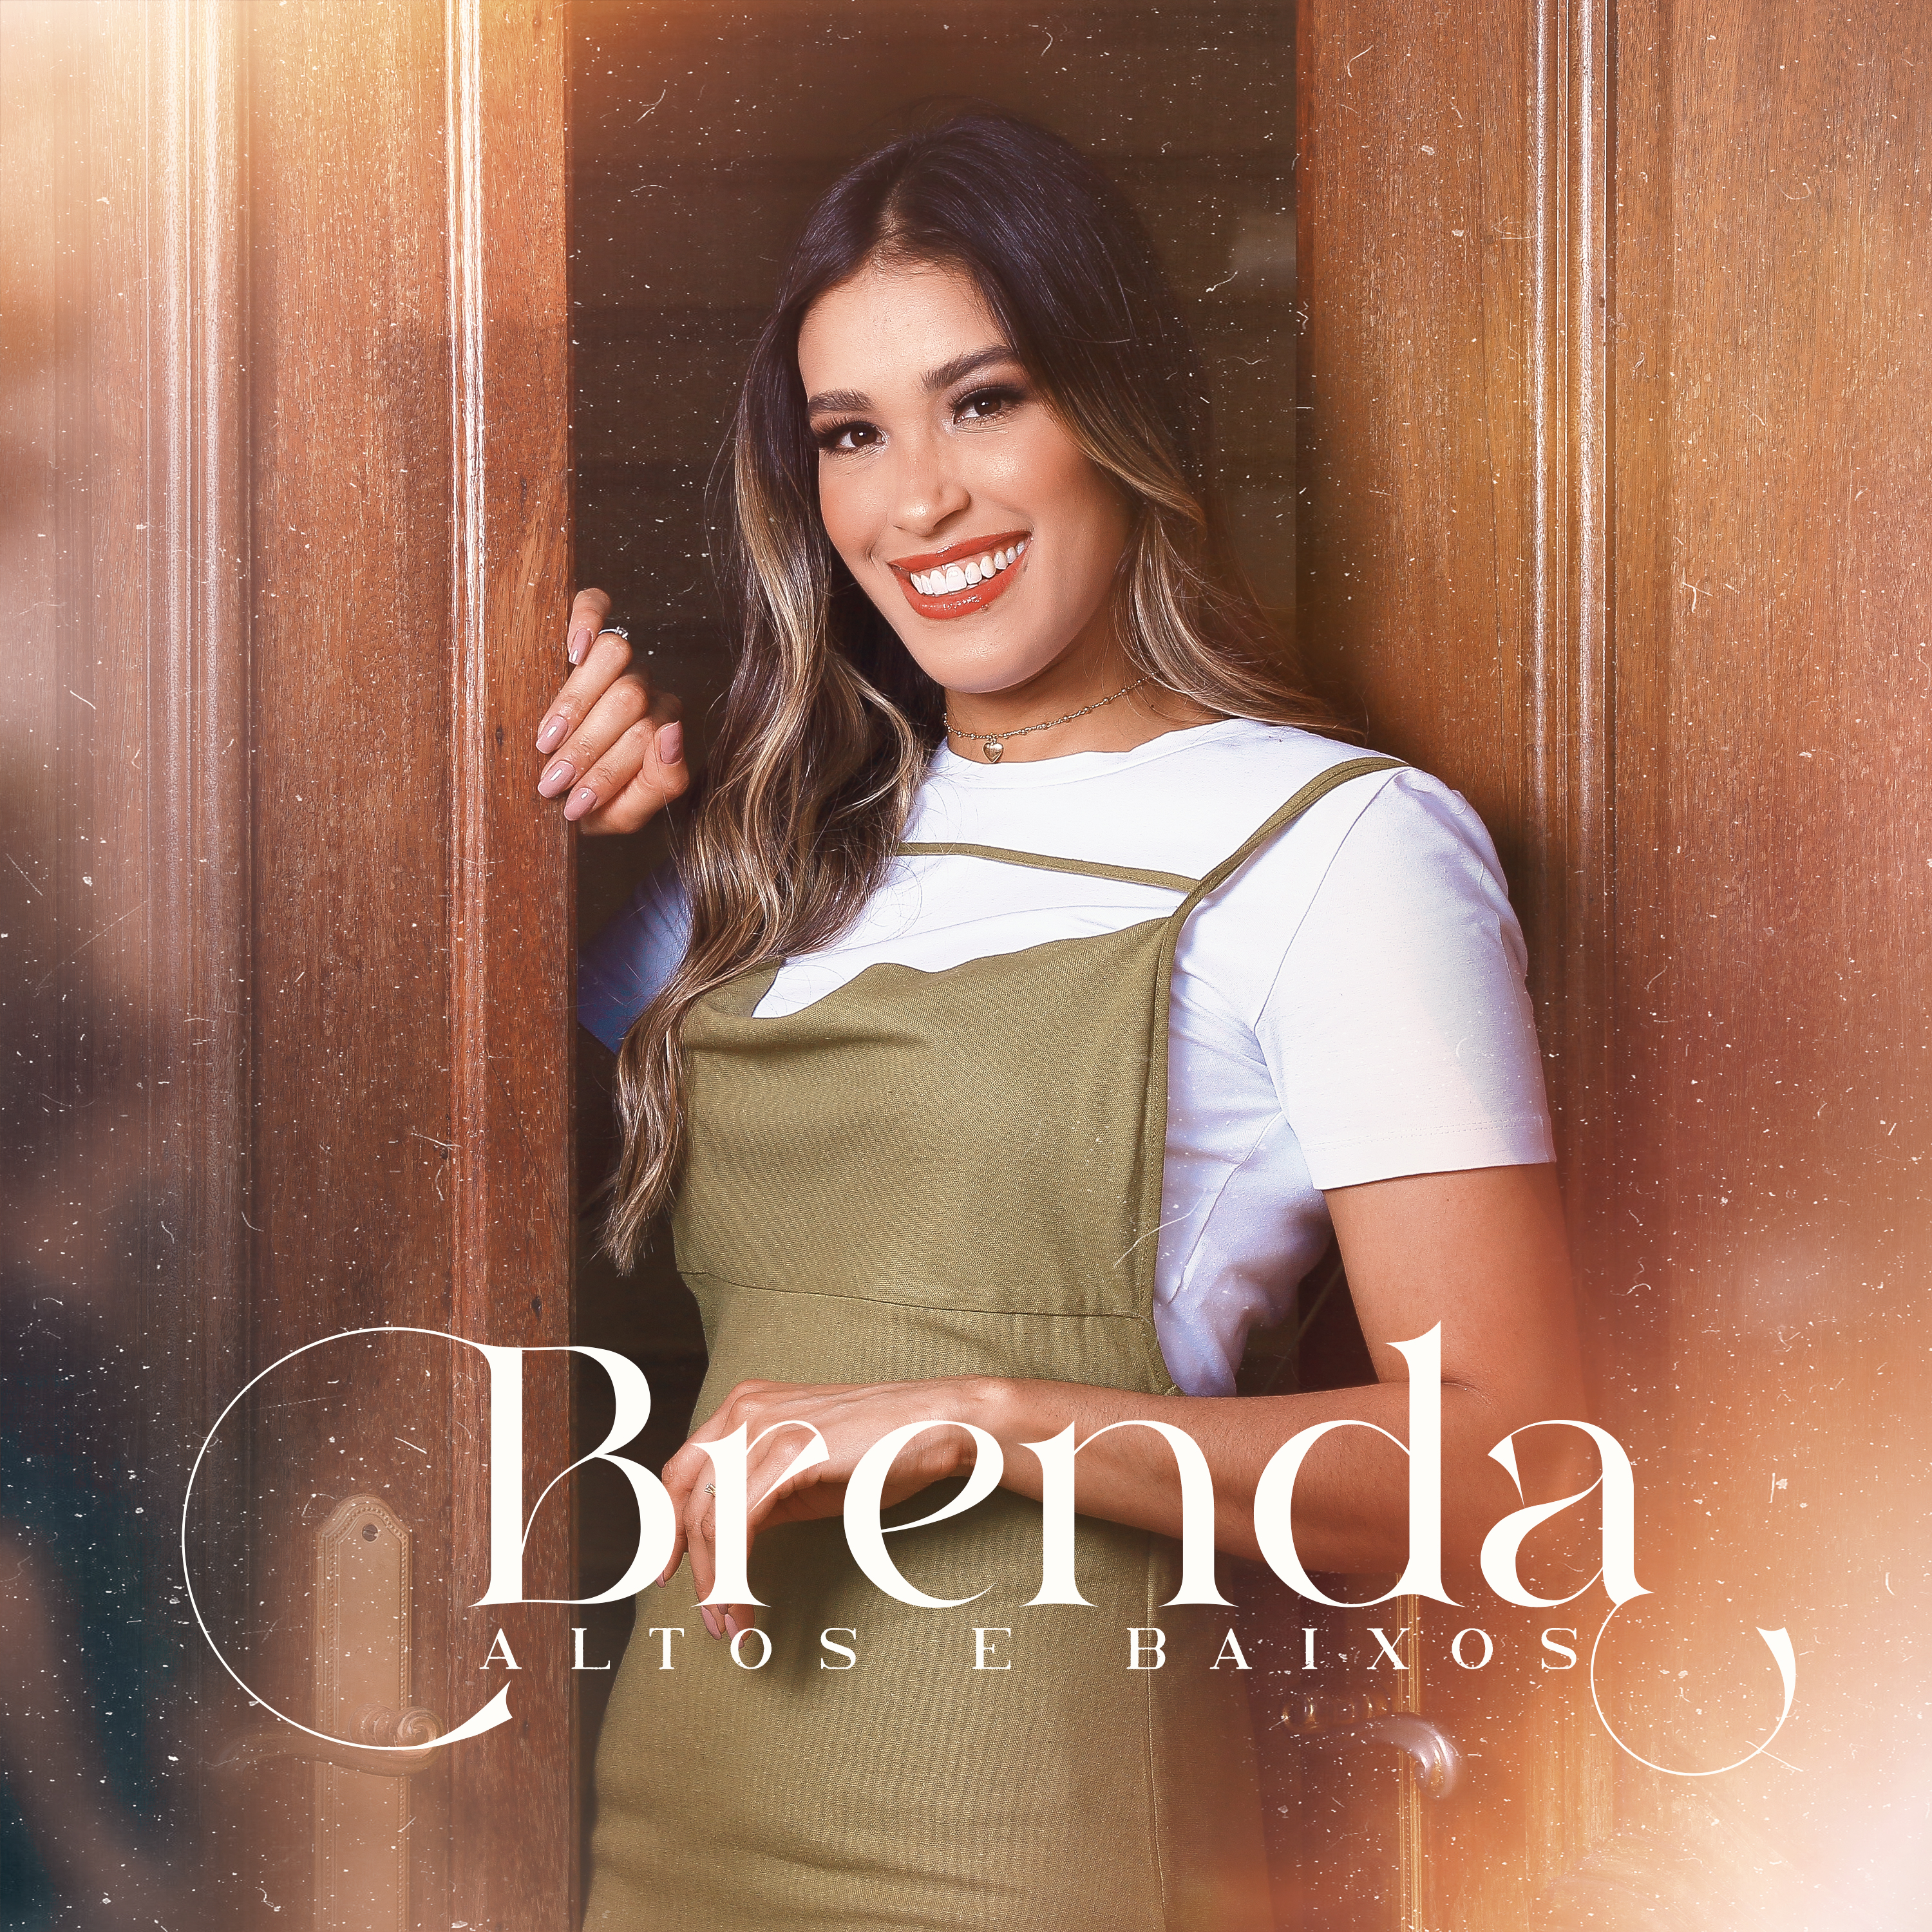 Brenda lança “Altos e Baixos”, uma canção que promove fé, resiliência e força